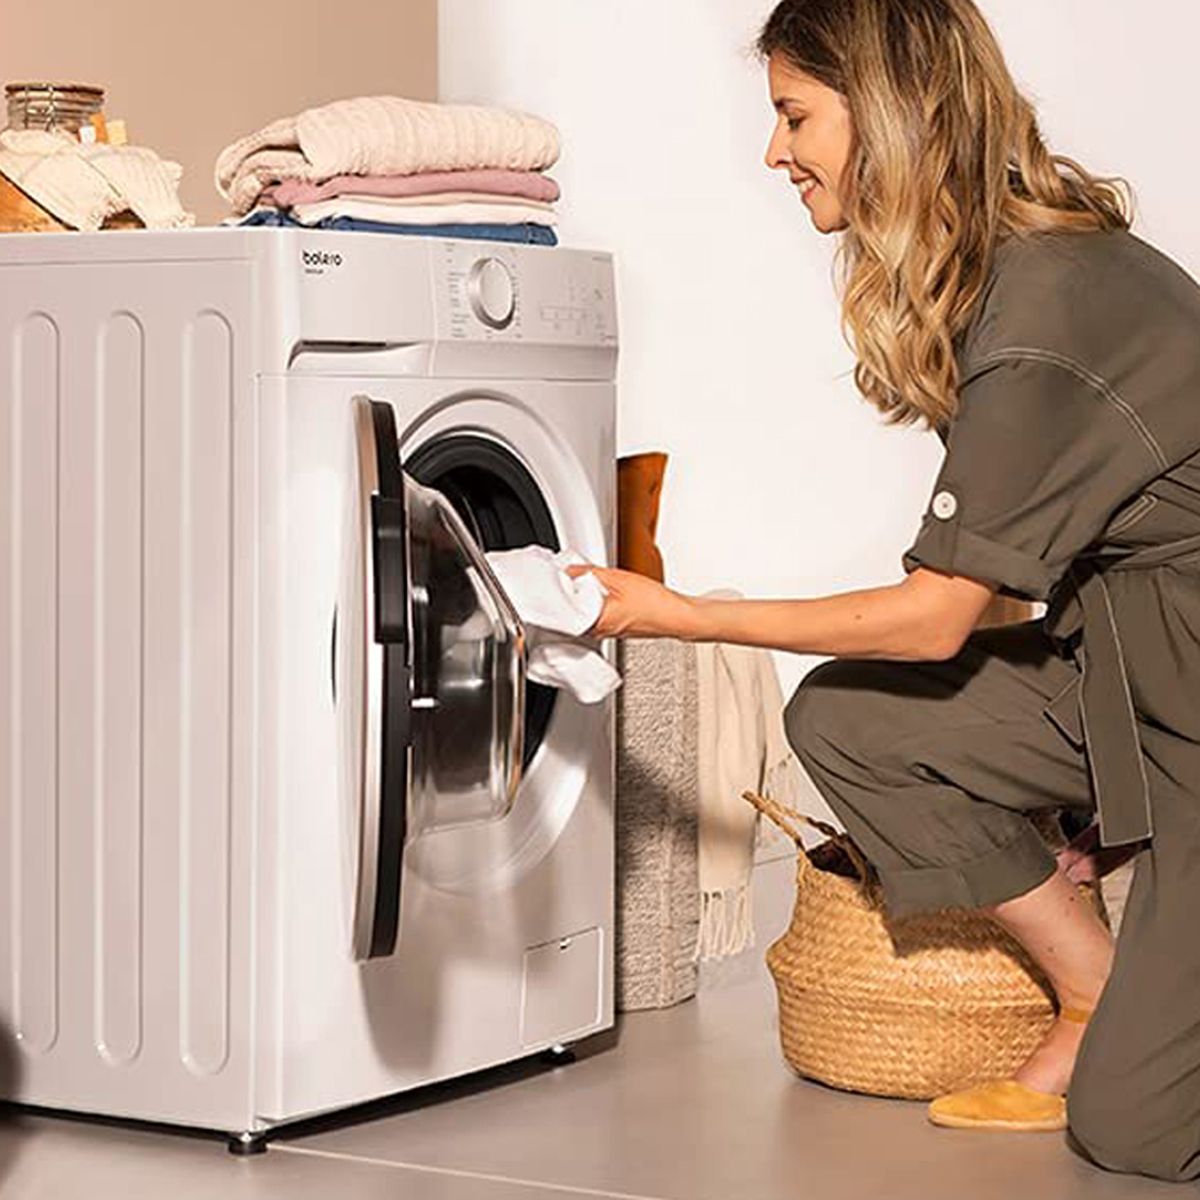 Cuál es la mejor secadora para la ropa, secadora de evacuación o